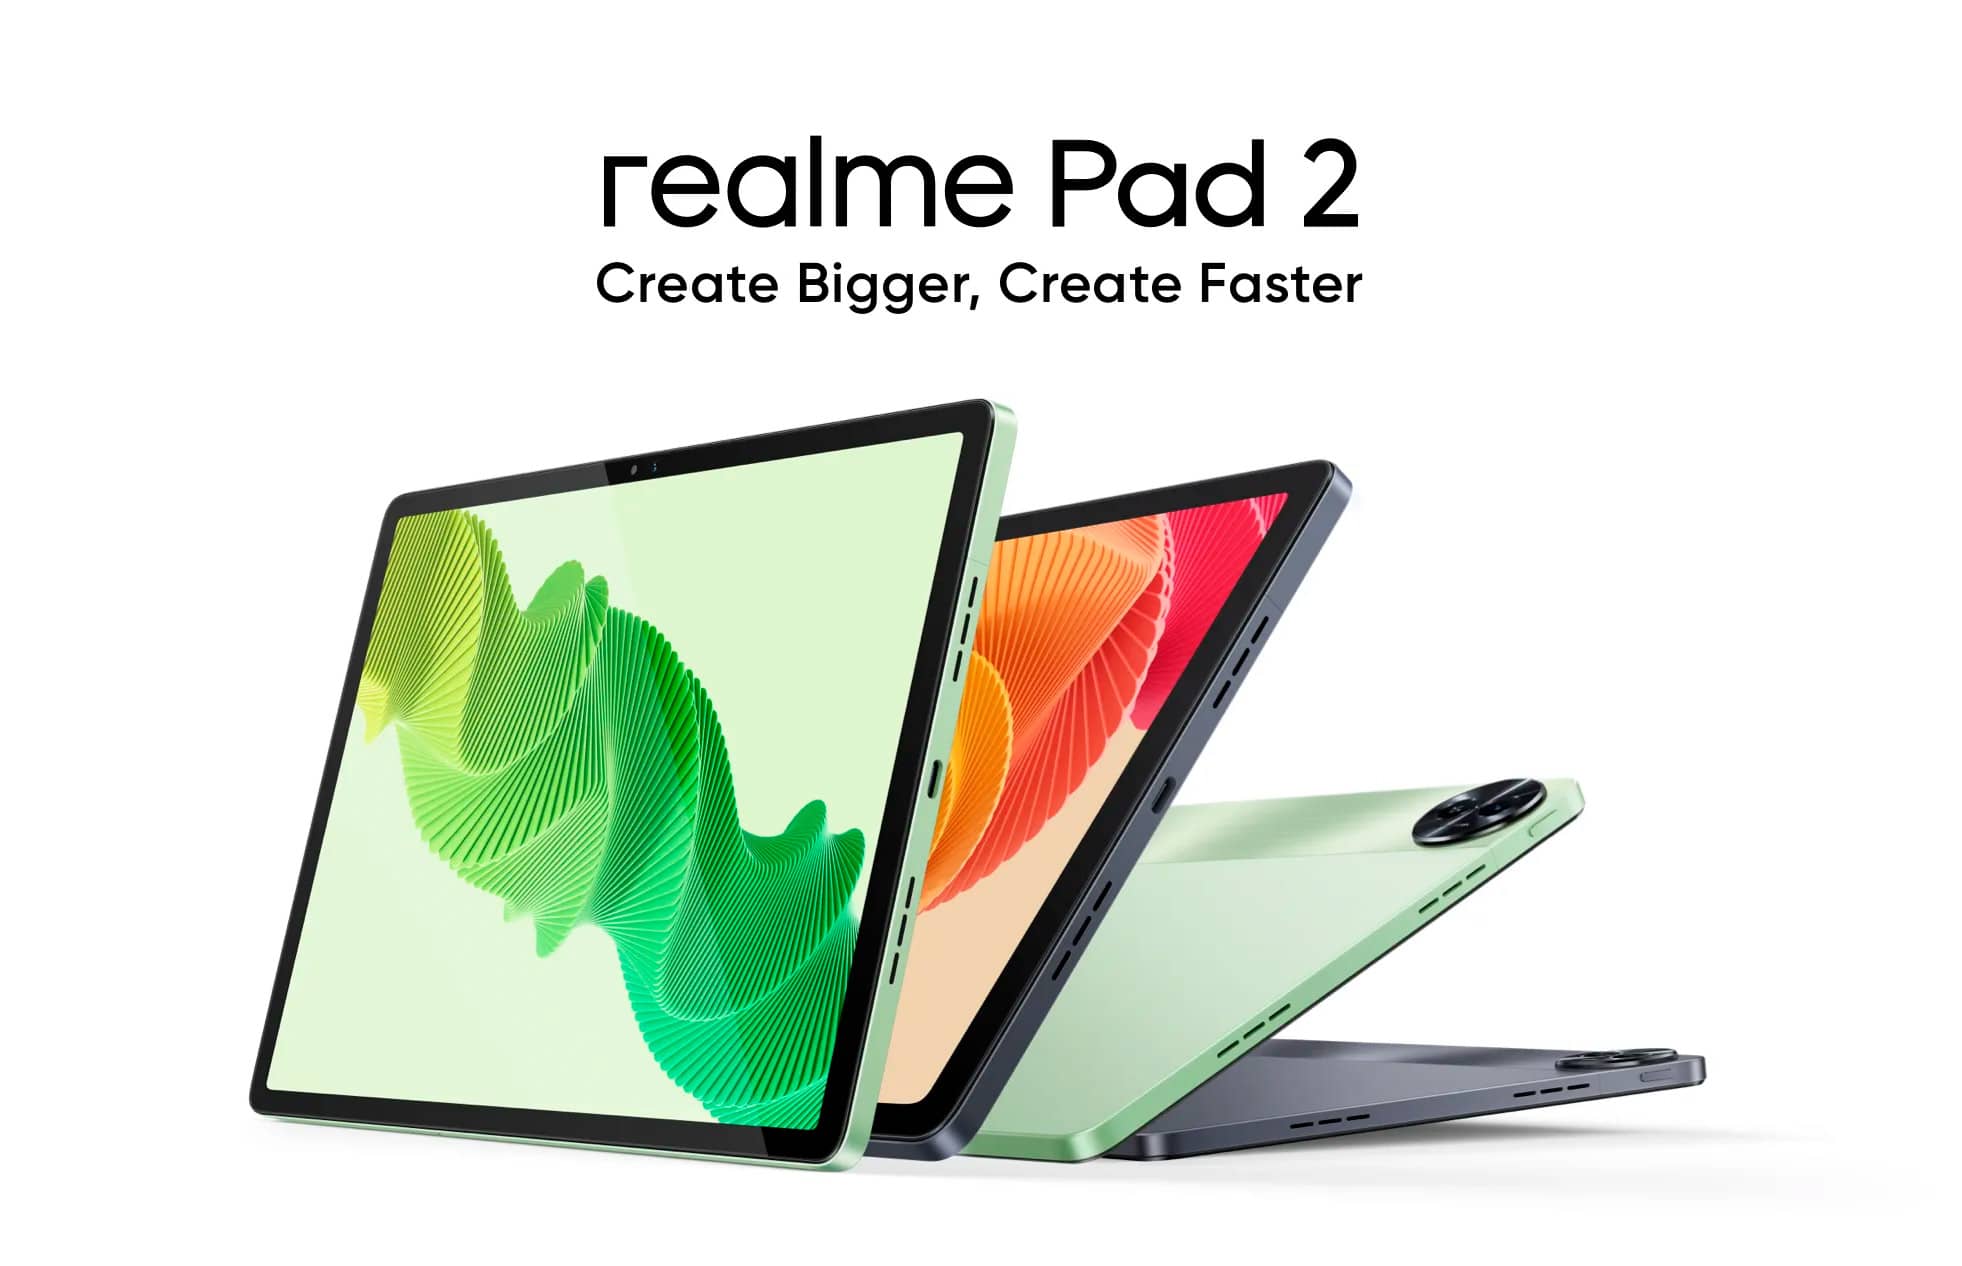 Realme Pad 2 выпущен в версии только с Wi-Fi